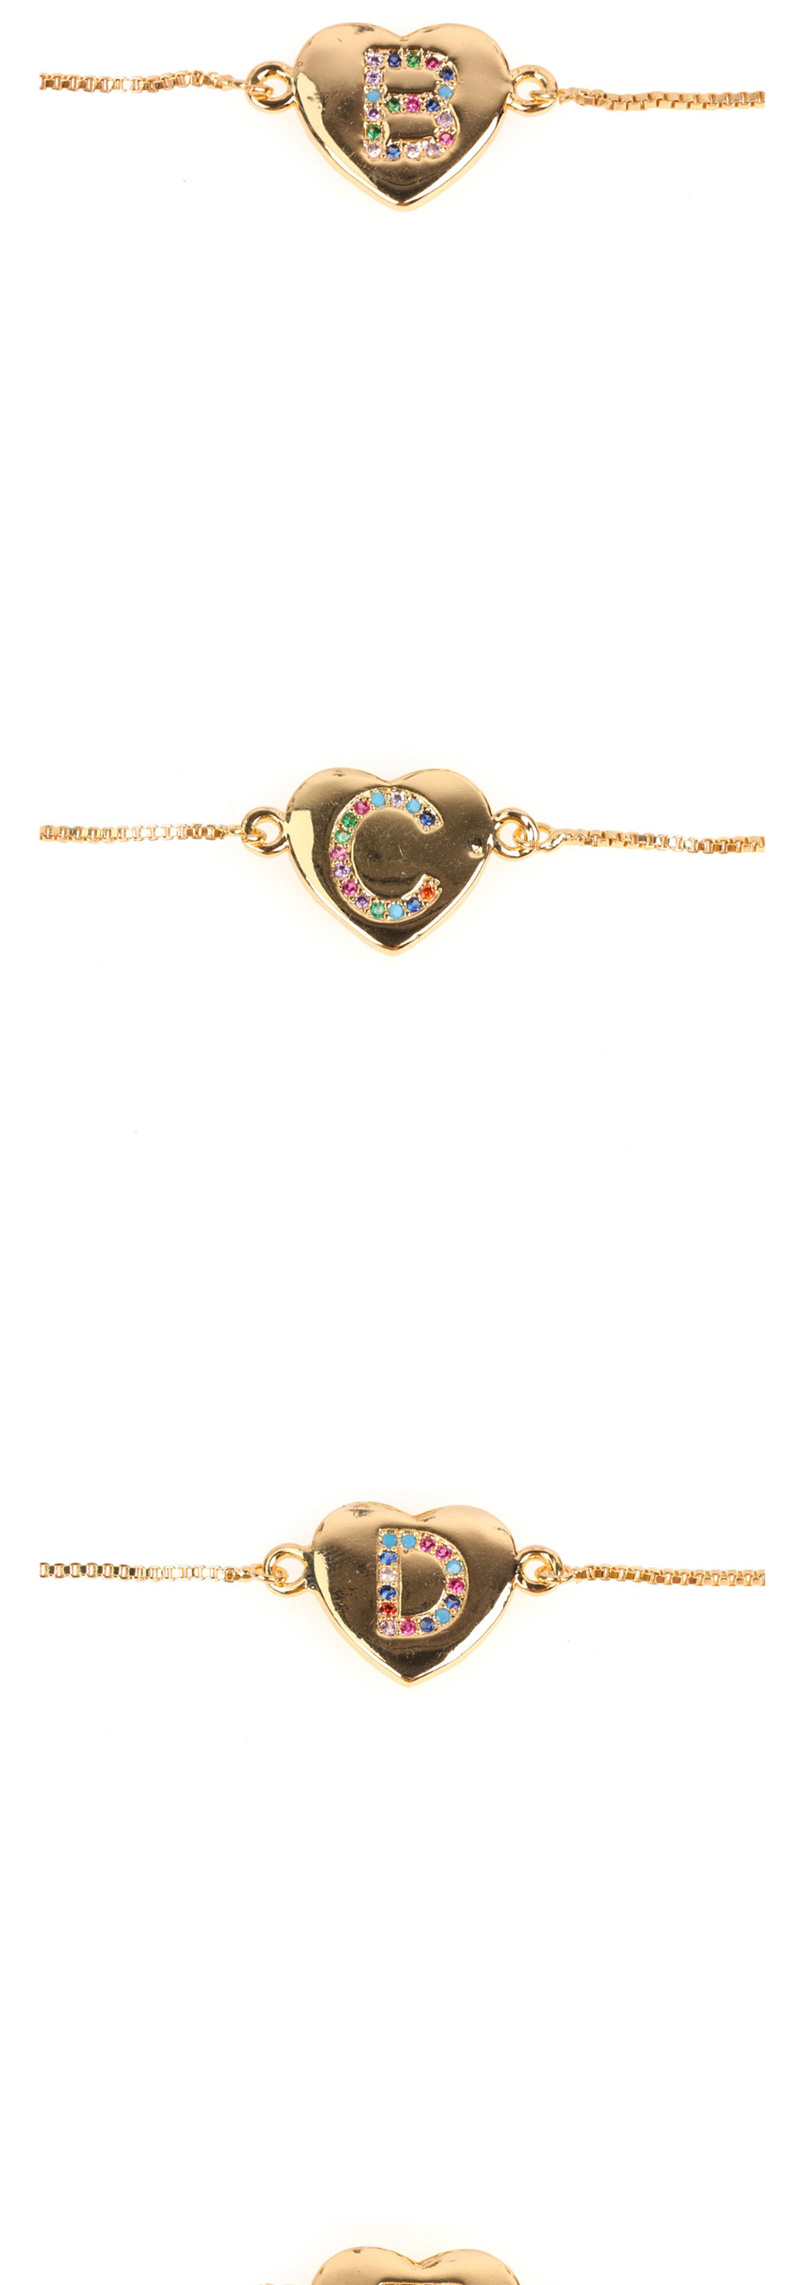 Fashion Z Golden Heart Bracelet With Diamonds And Letters,Bracelets